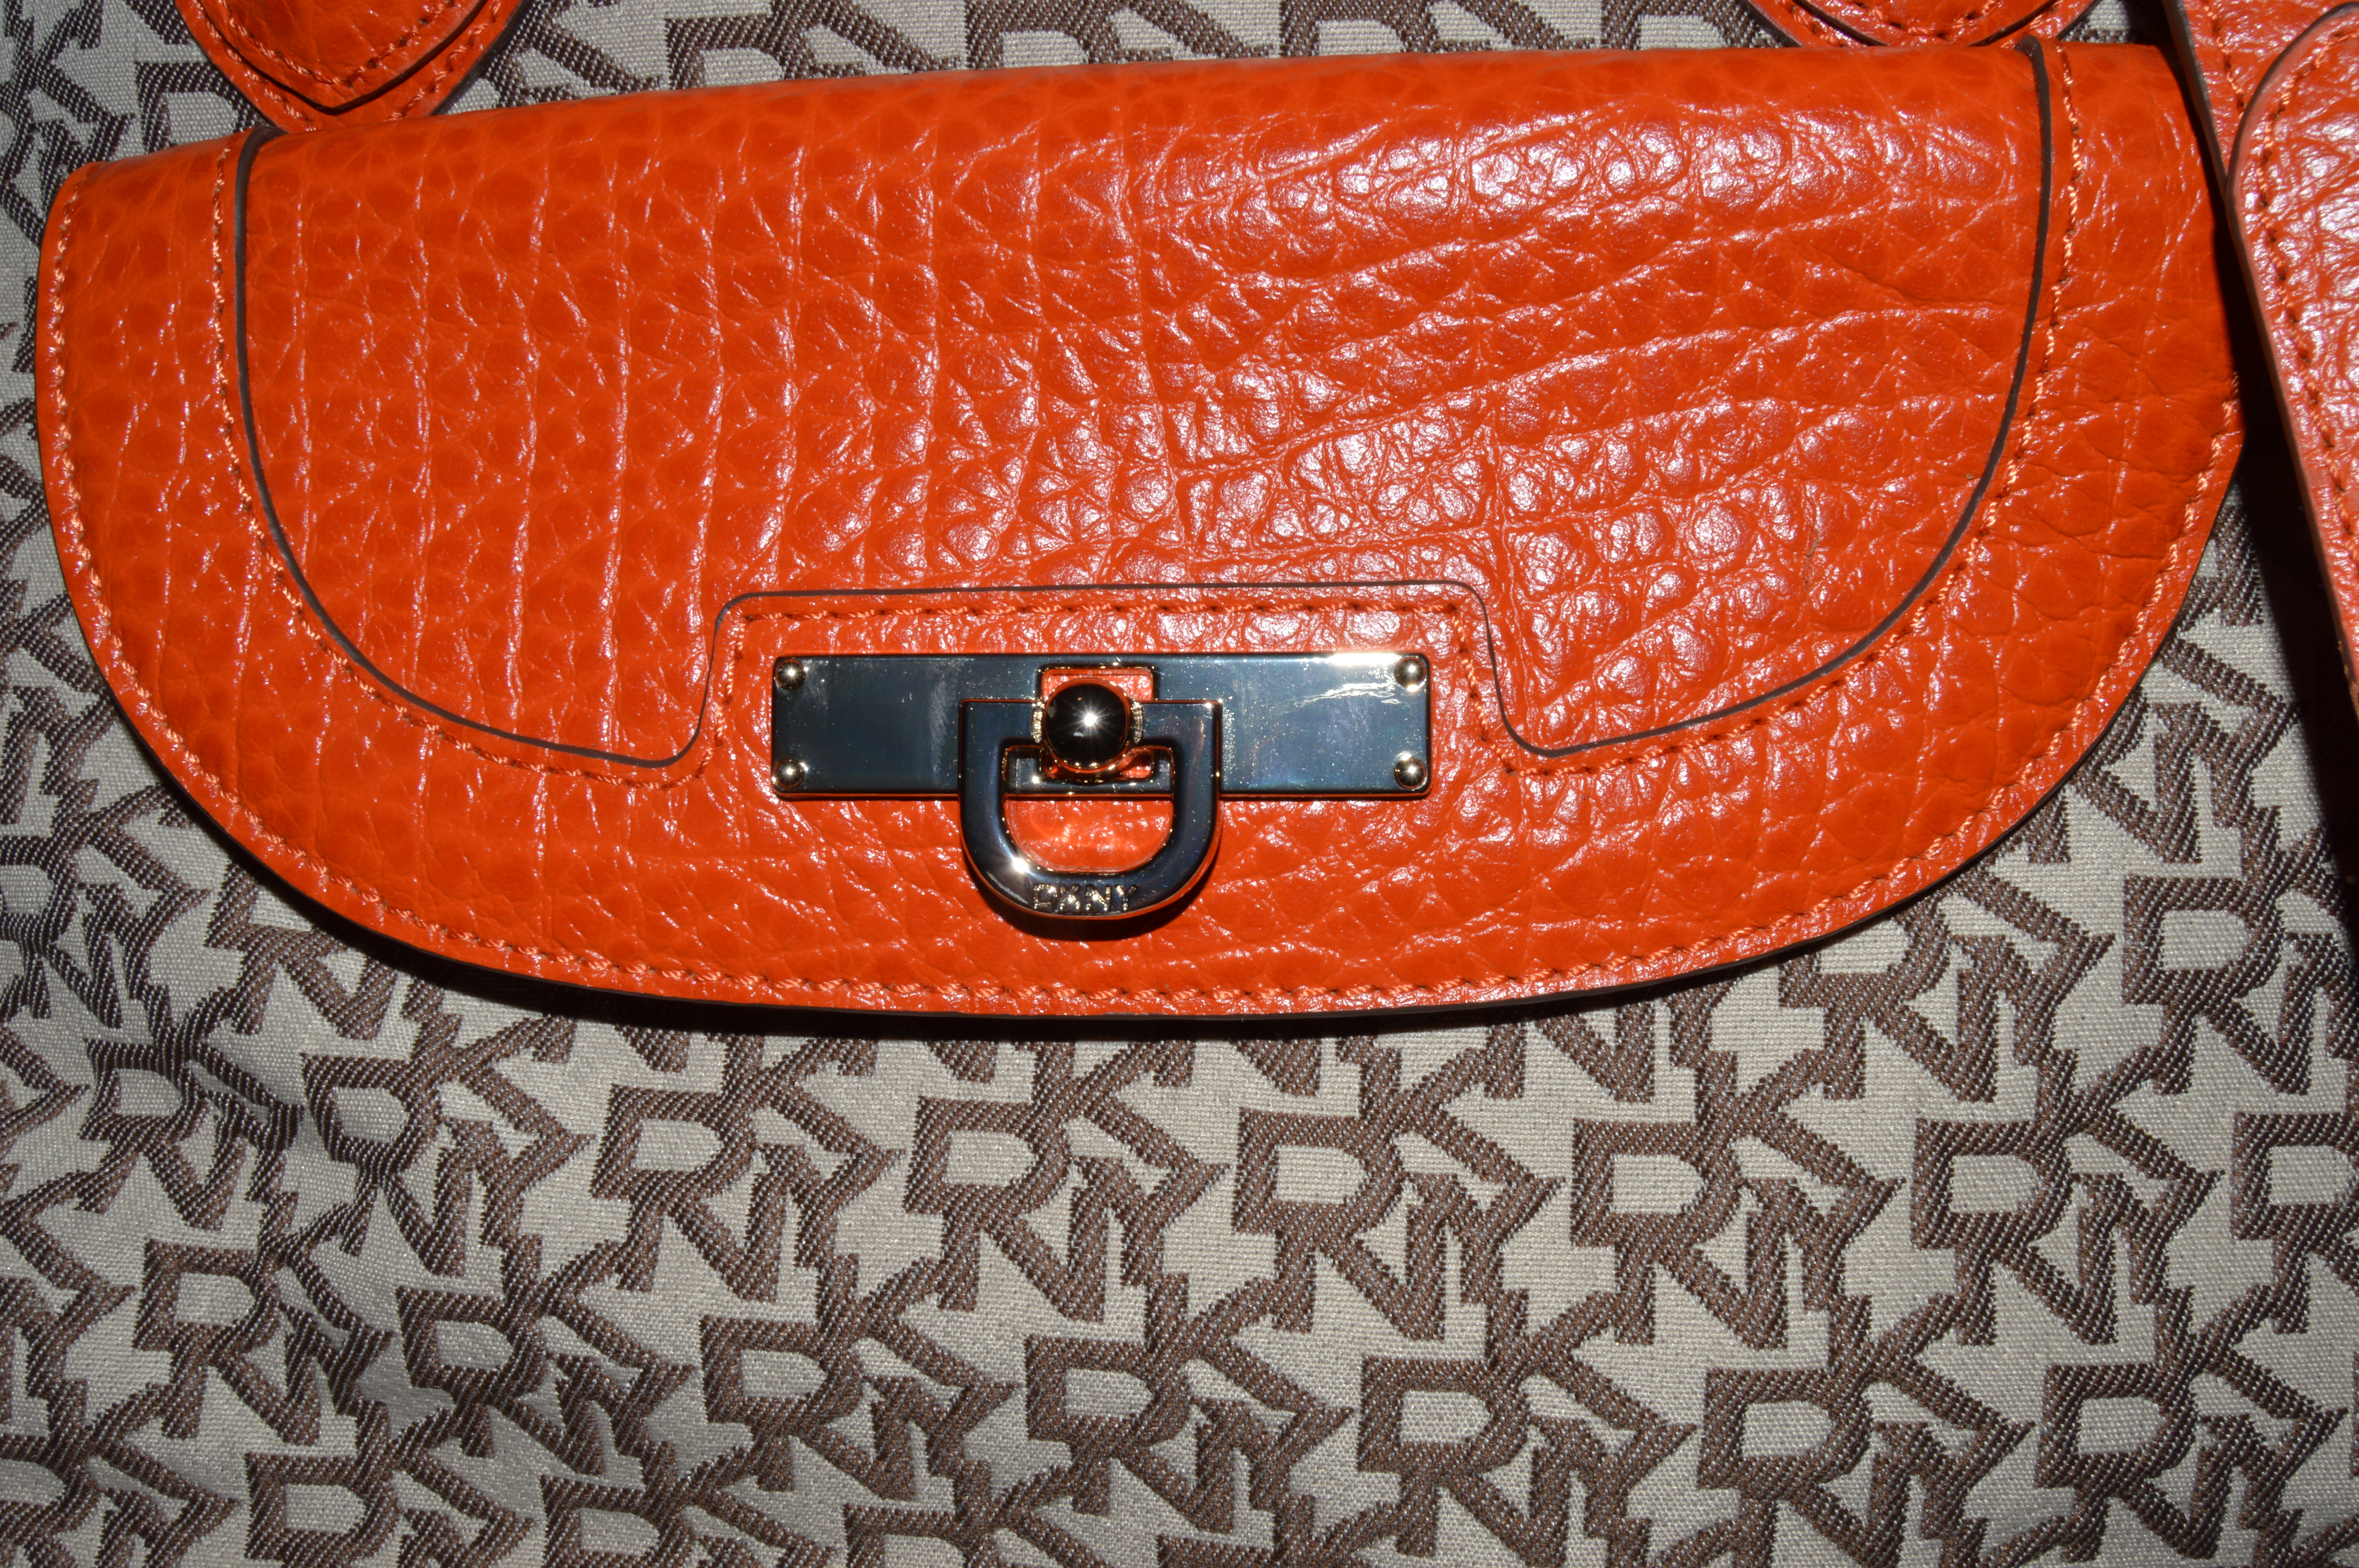 DKNY - Handbag